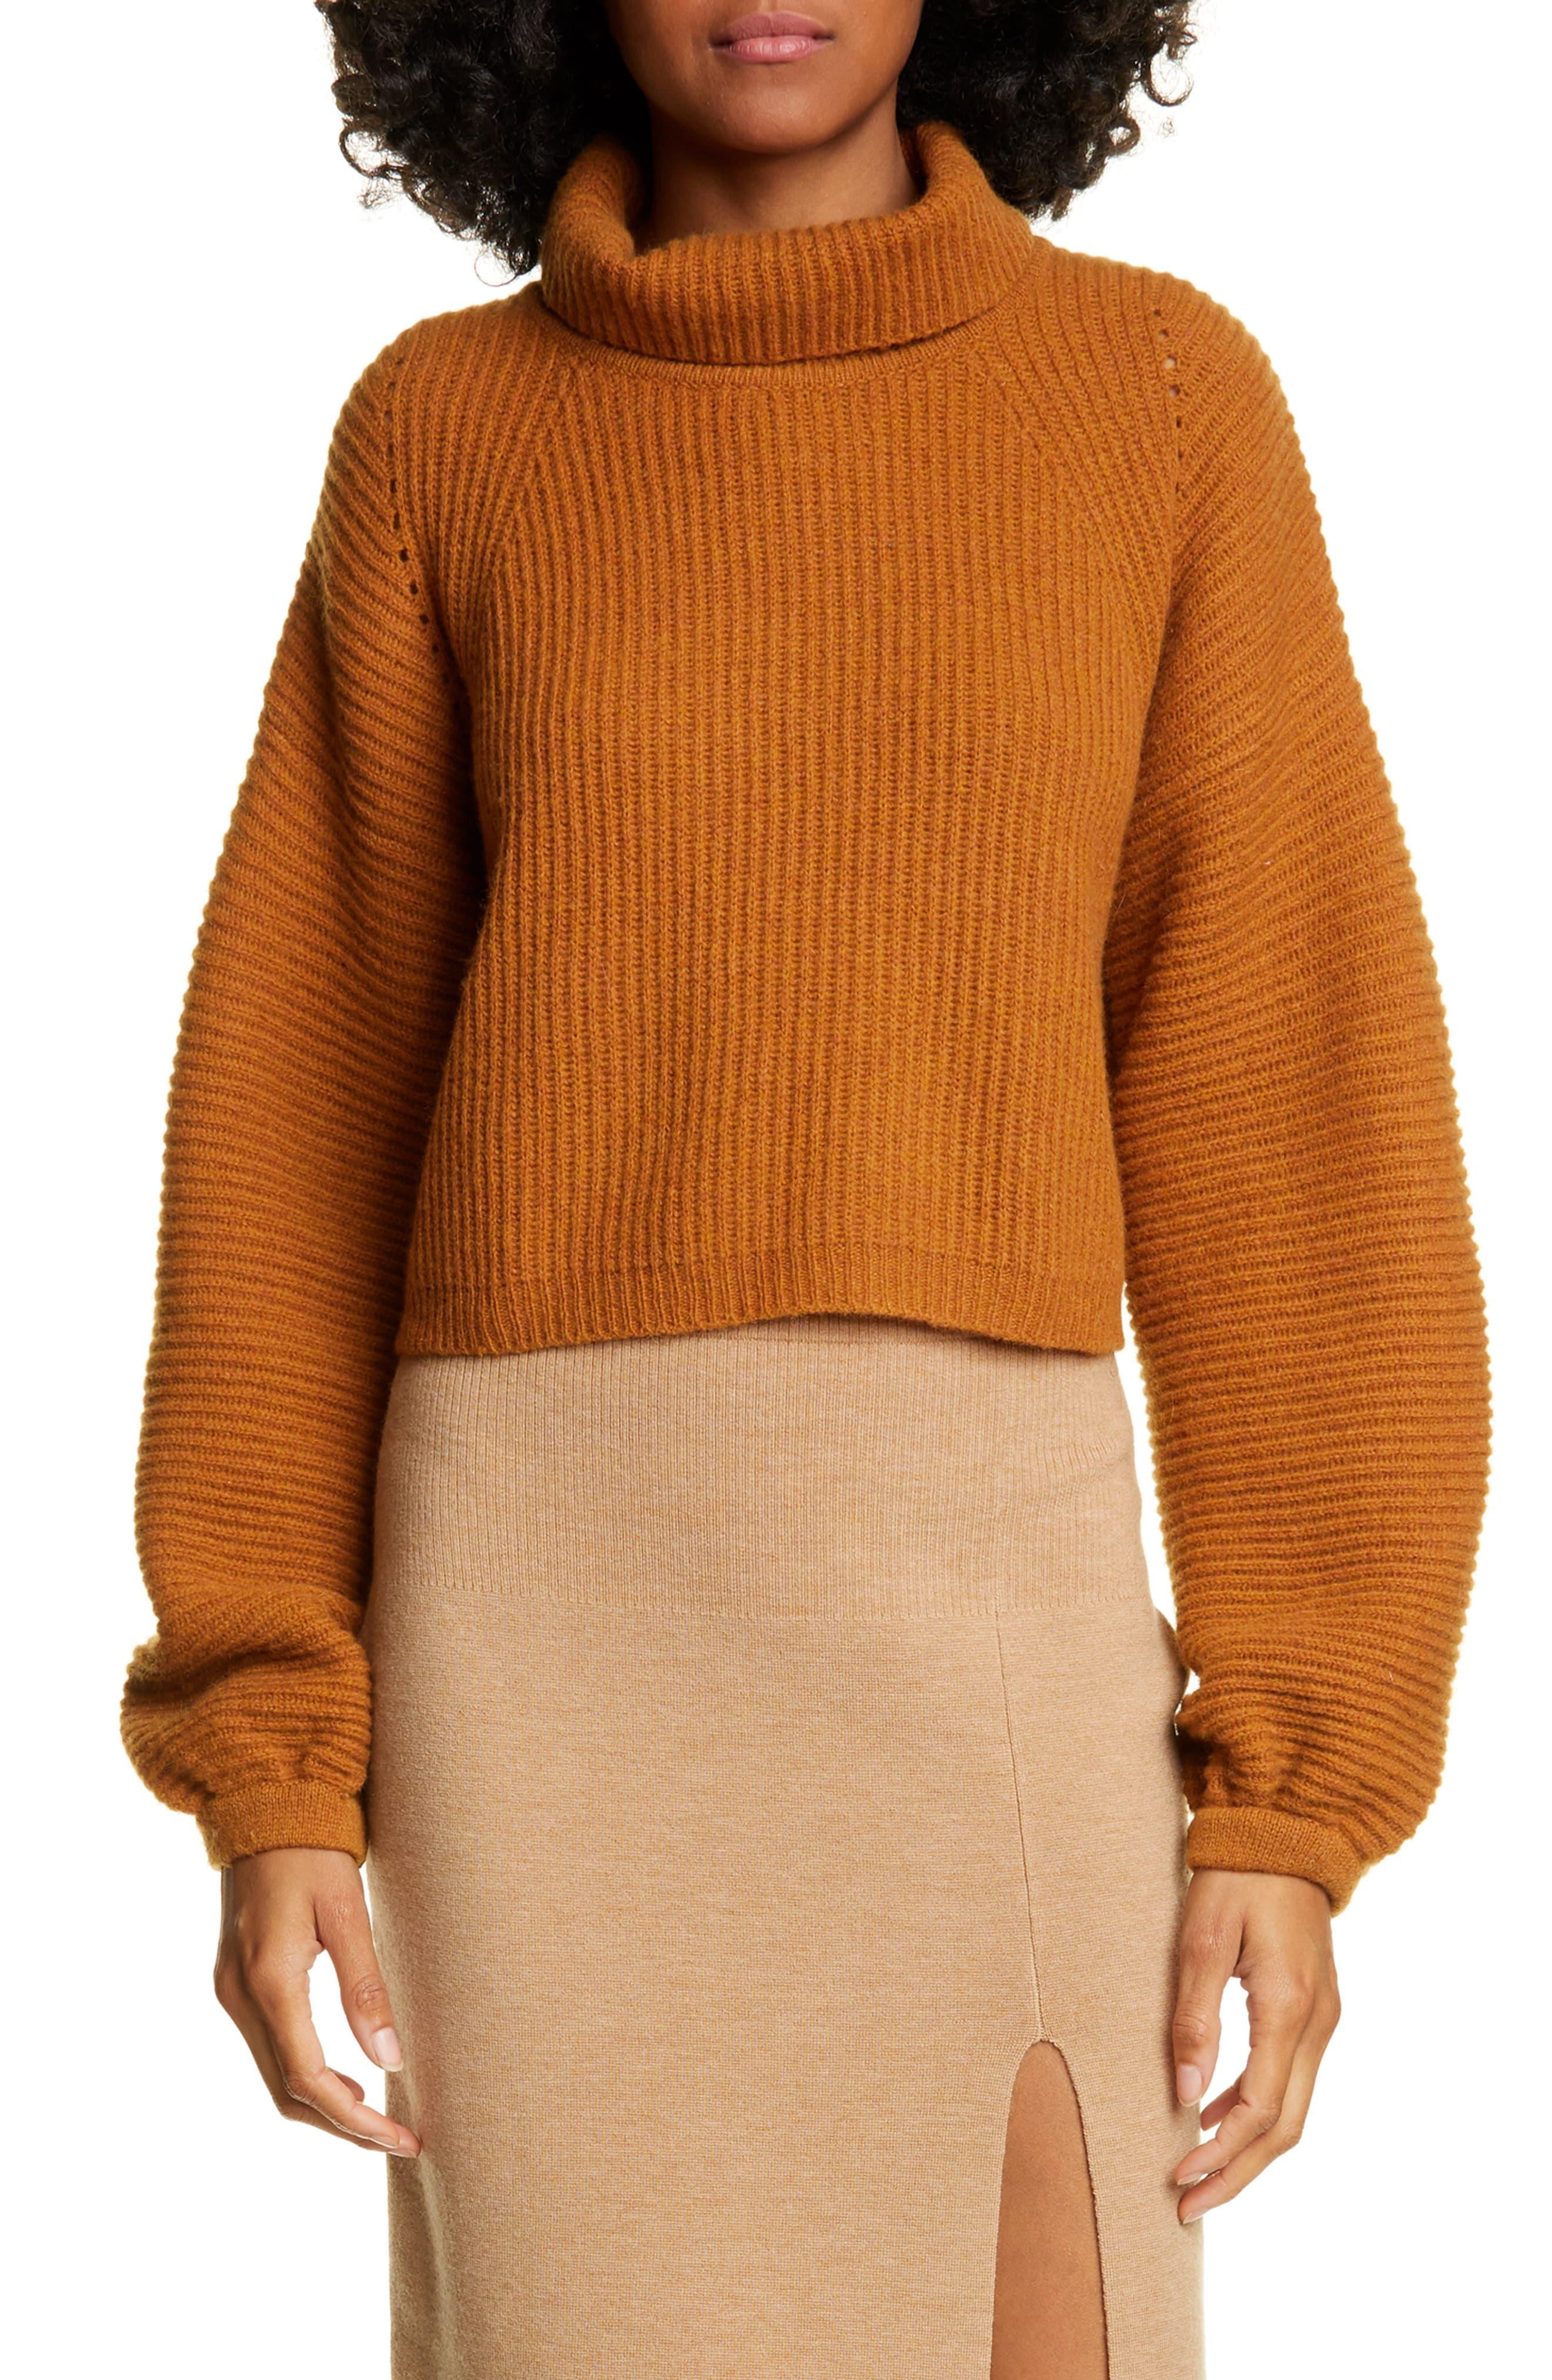 AMUR Jaco Mock Neck Crop Wool Sweater in Copper (Orange) - Lyst